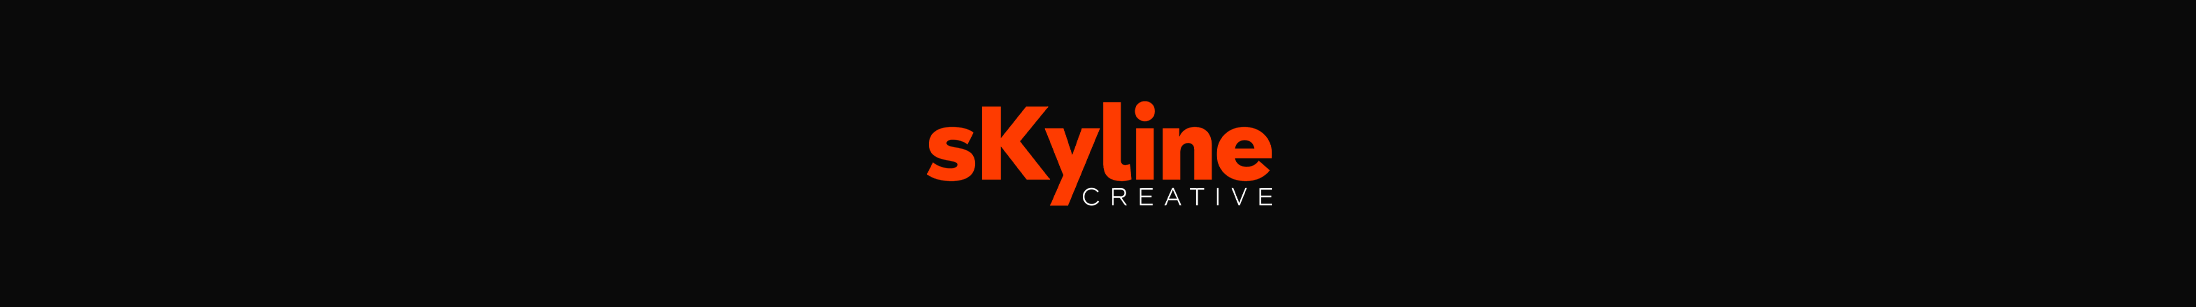 sKyline creative profil başlığı